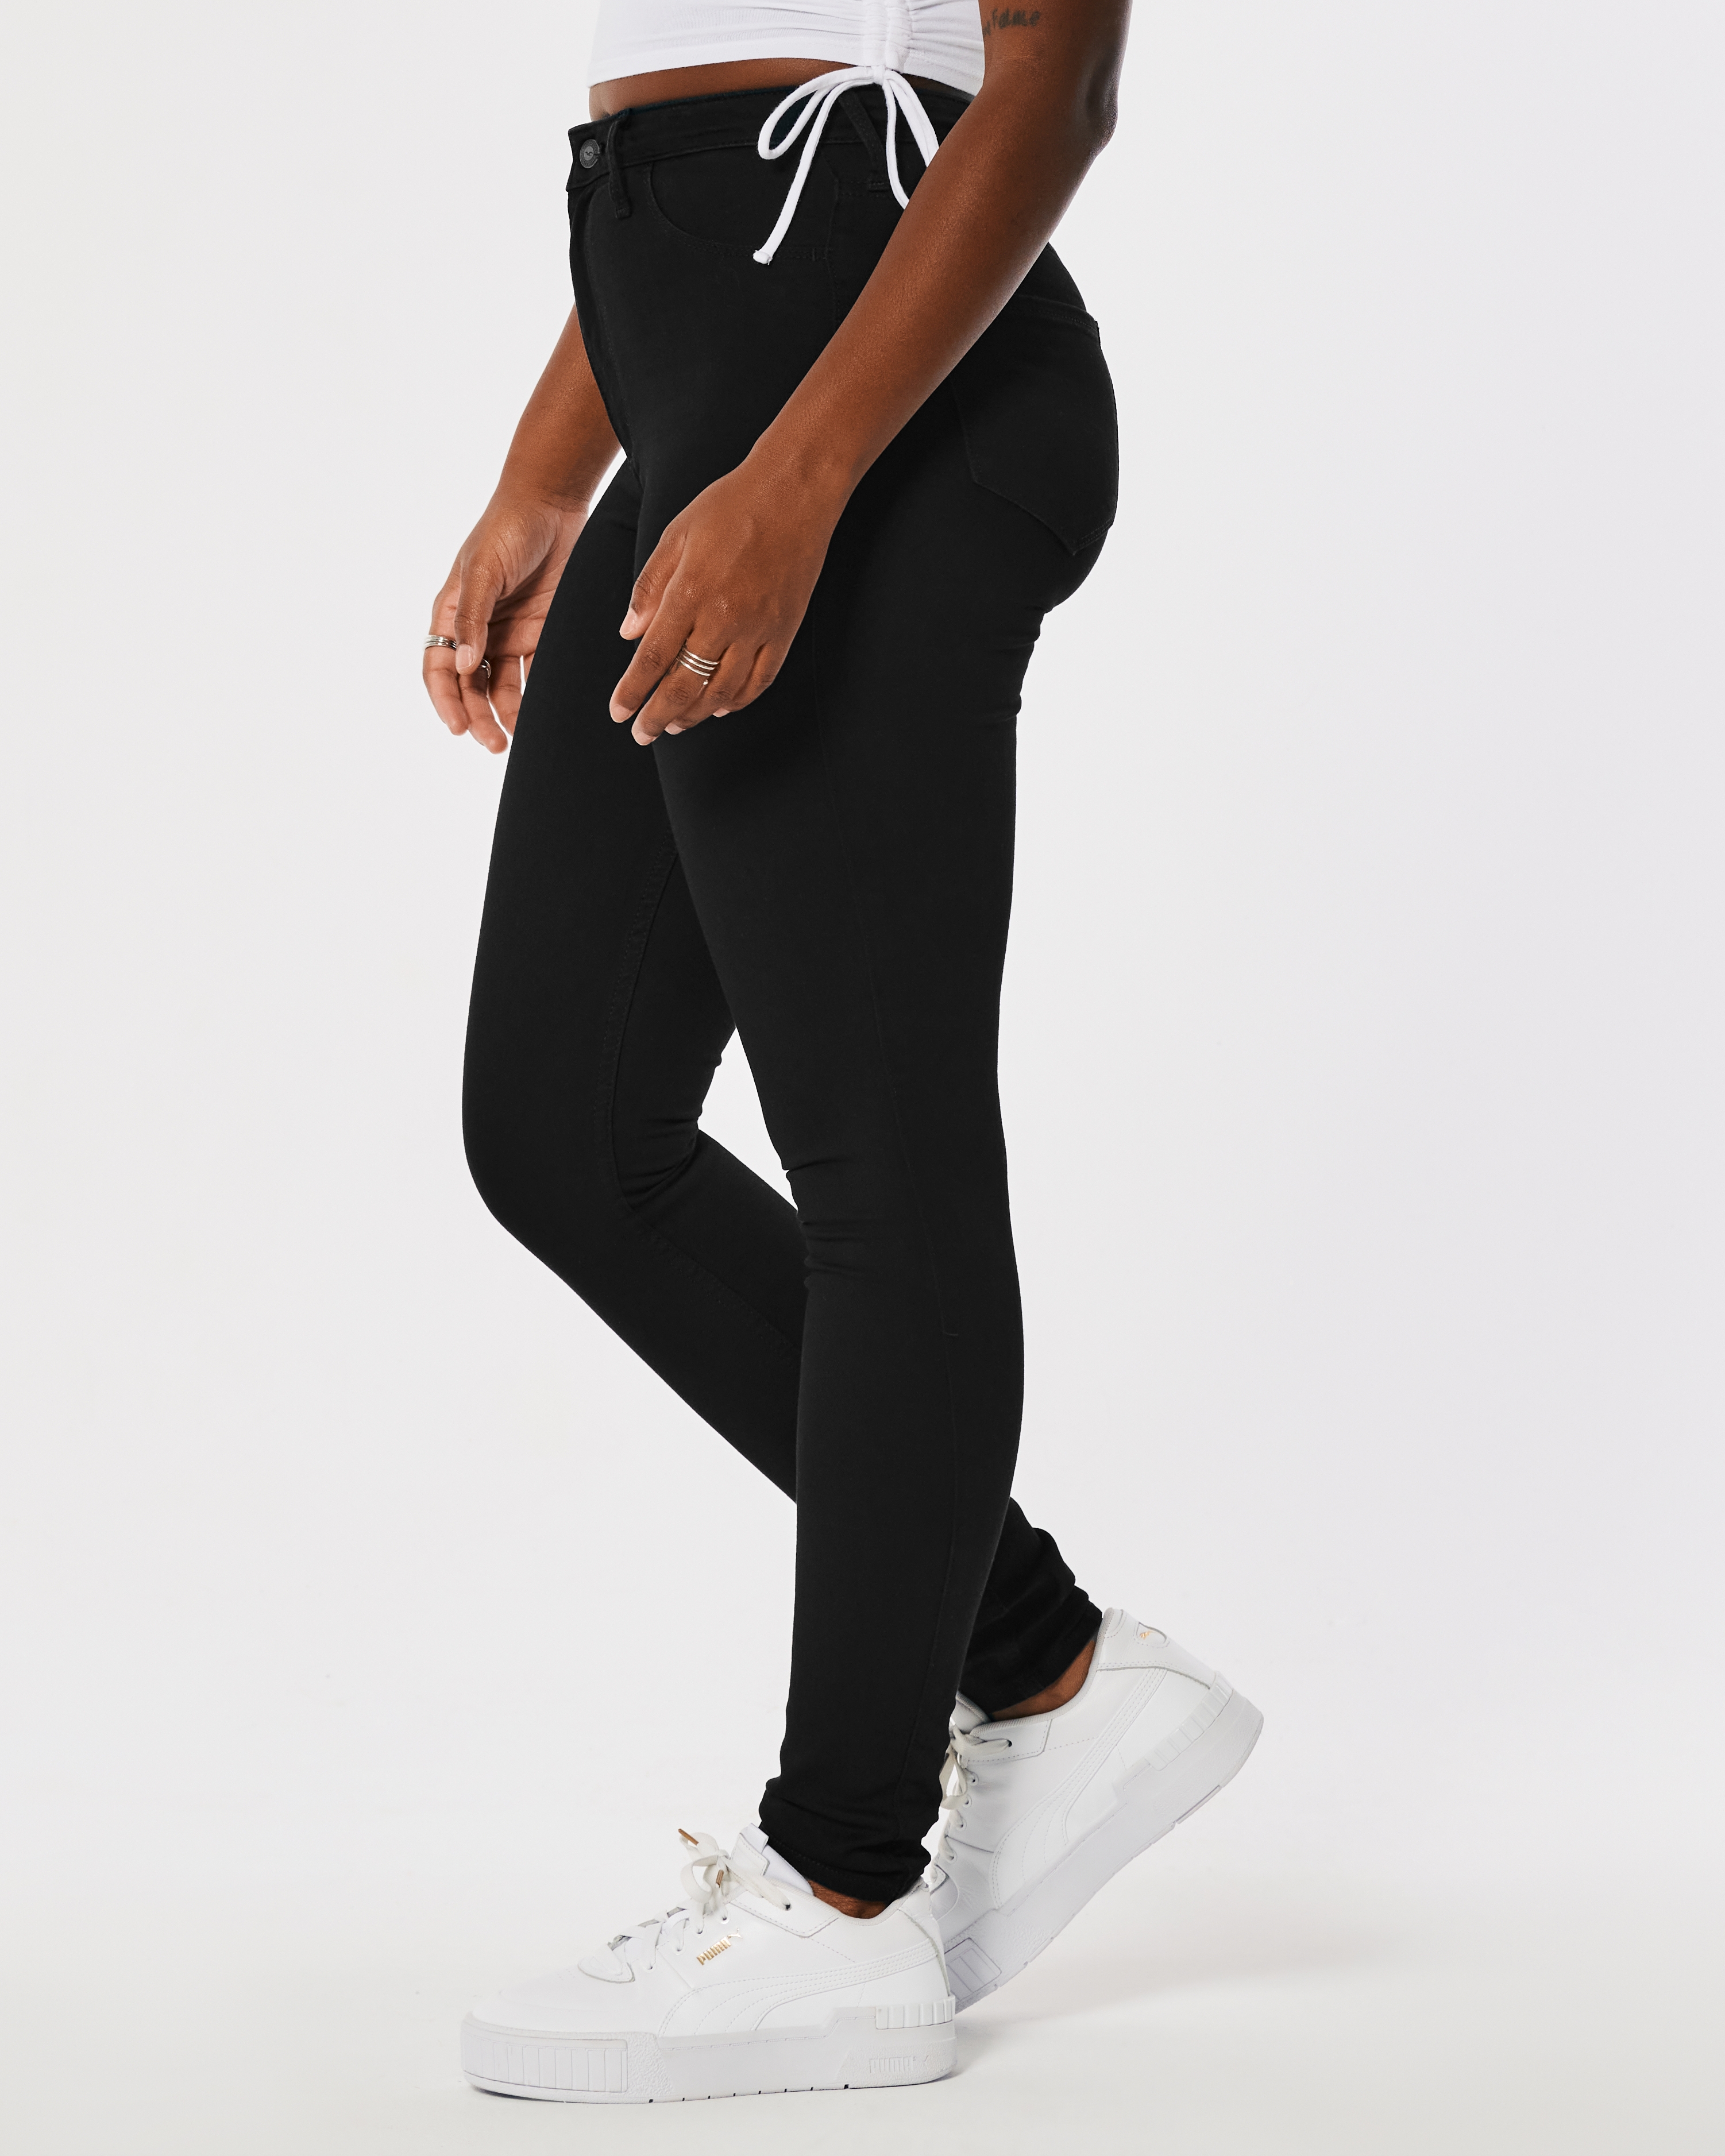 Women's Ultra High-Rise Black Jean Leggings - Hollister Co.